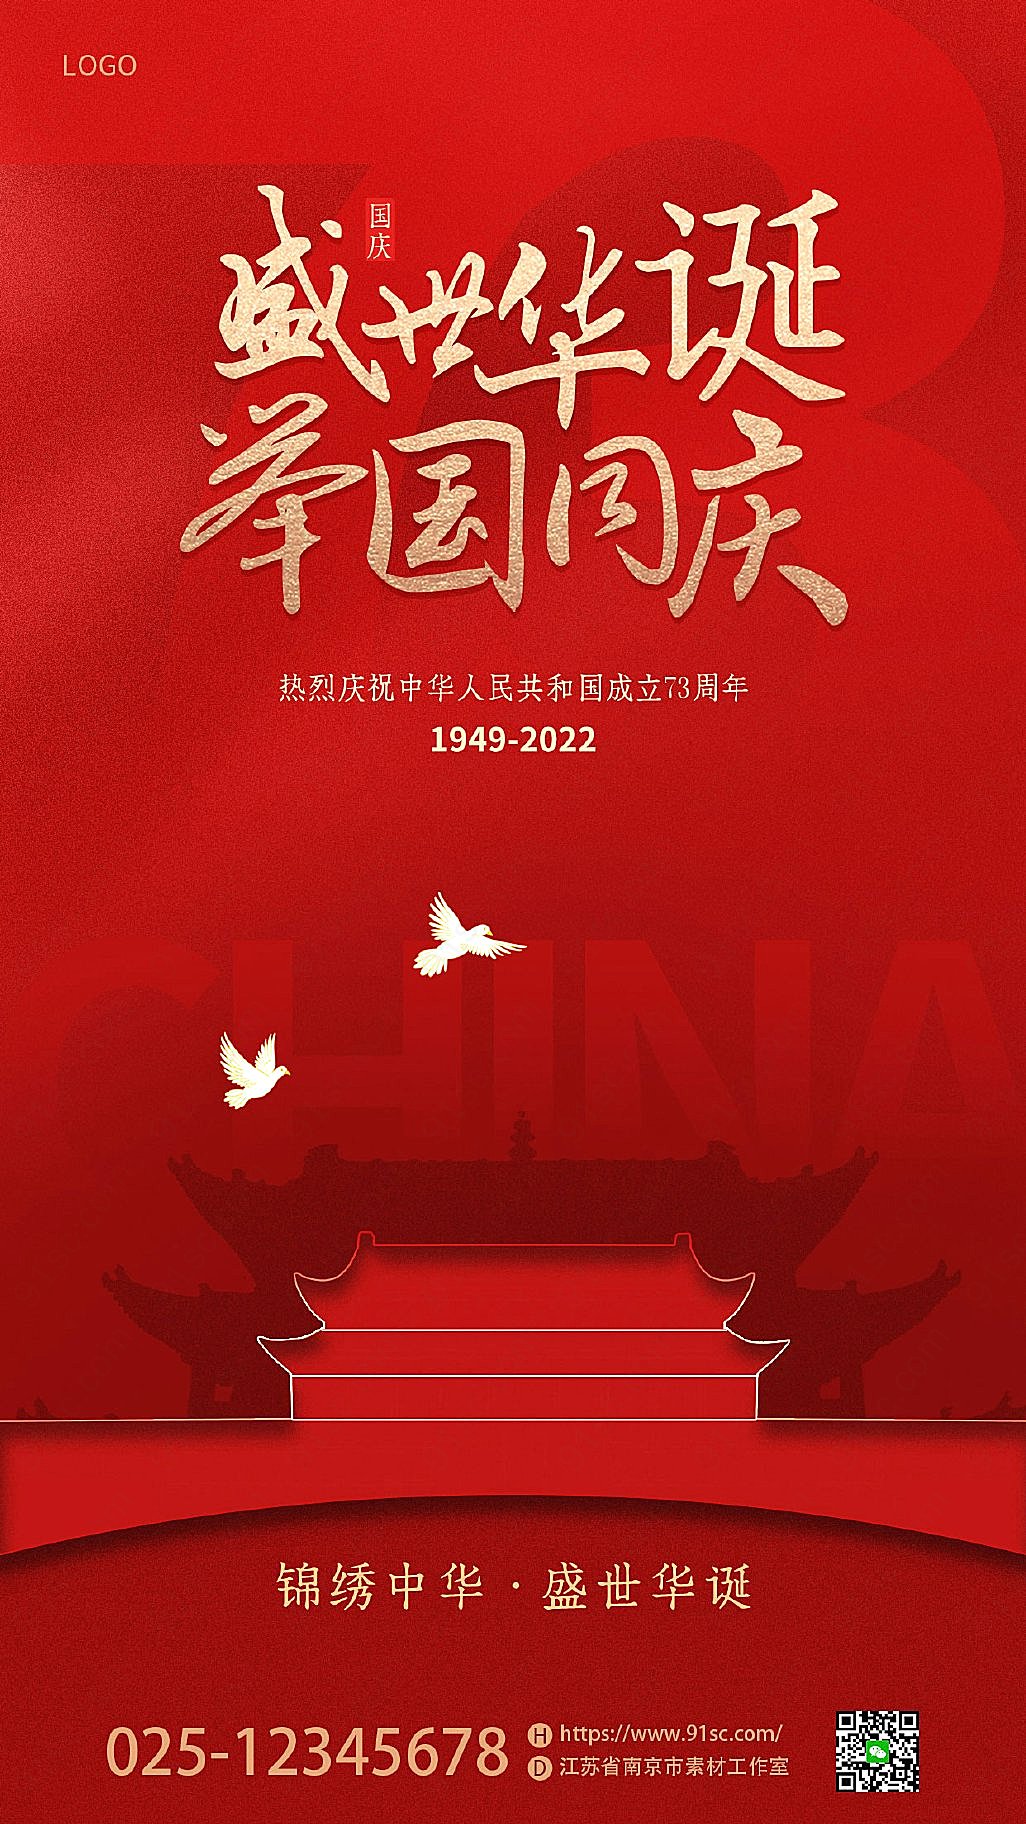 国庆73周年庆祝活动红色简约烫金风格海报设计新媒体用图下载